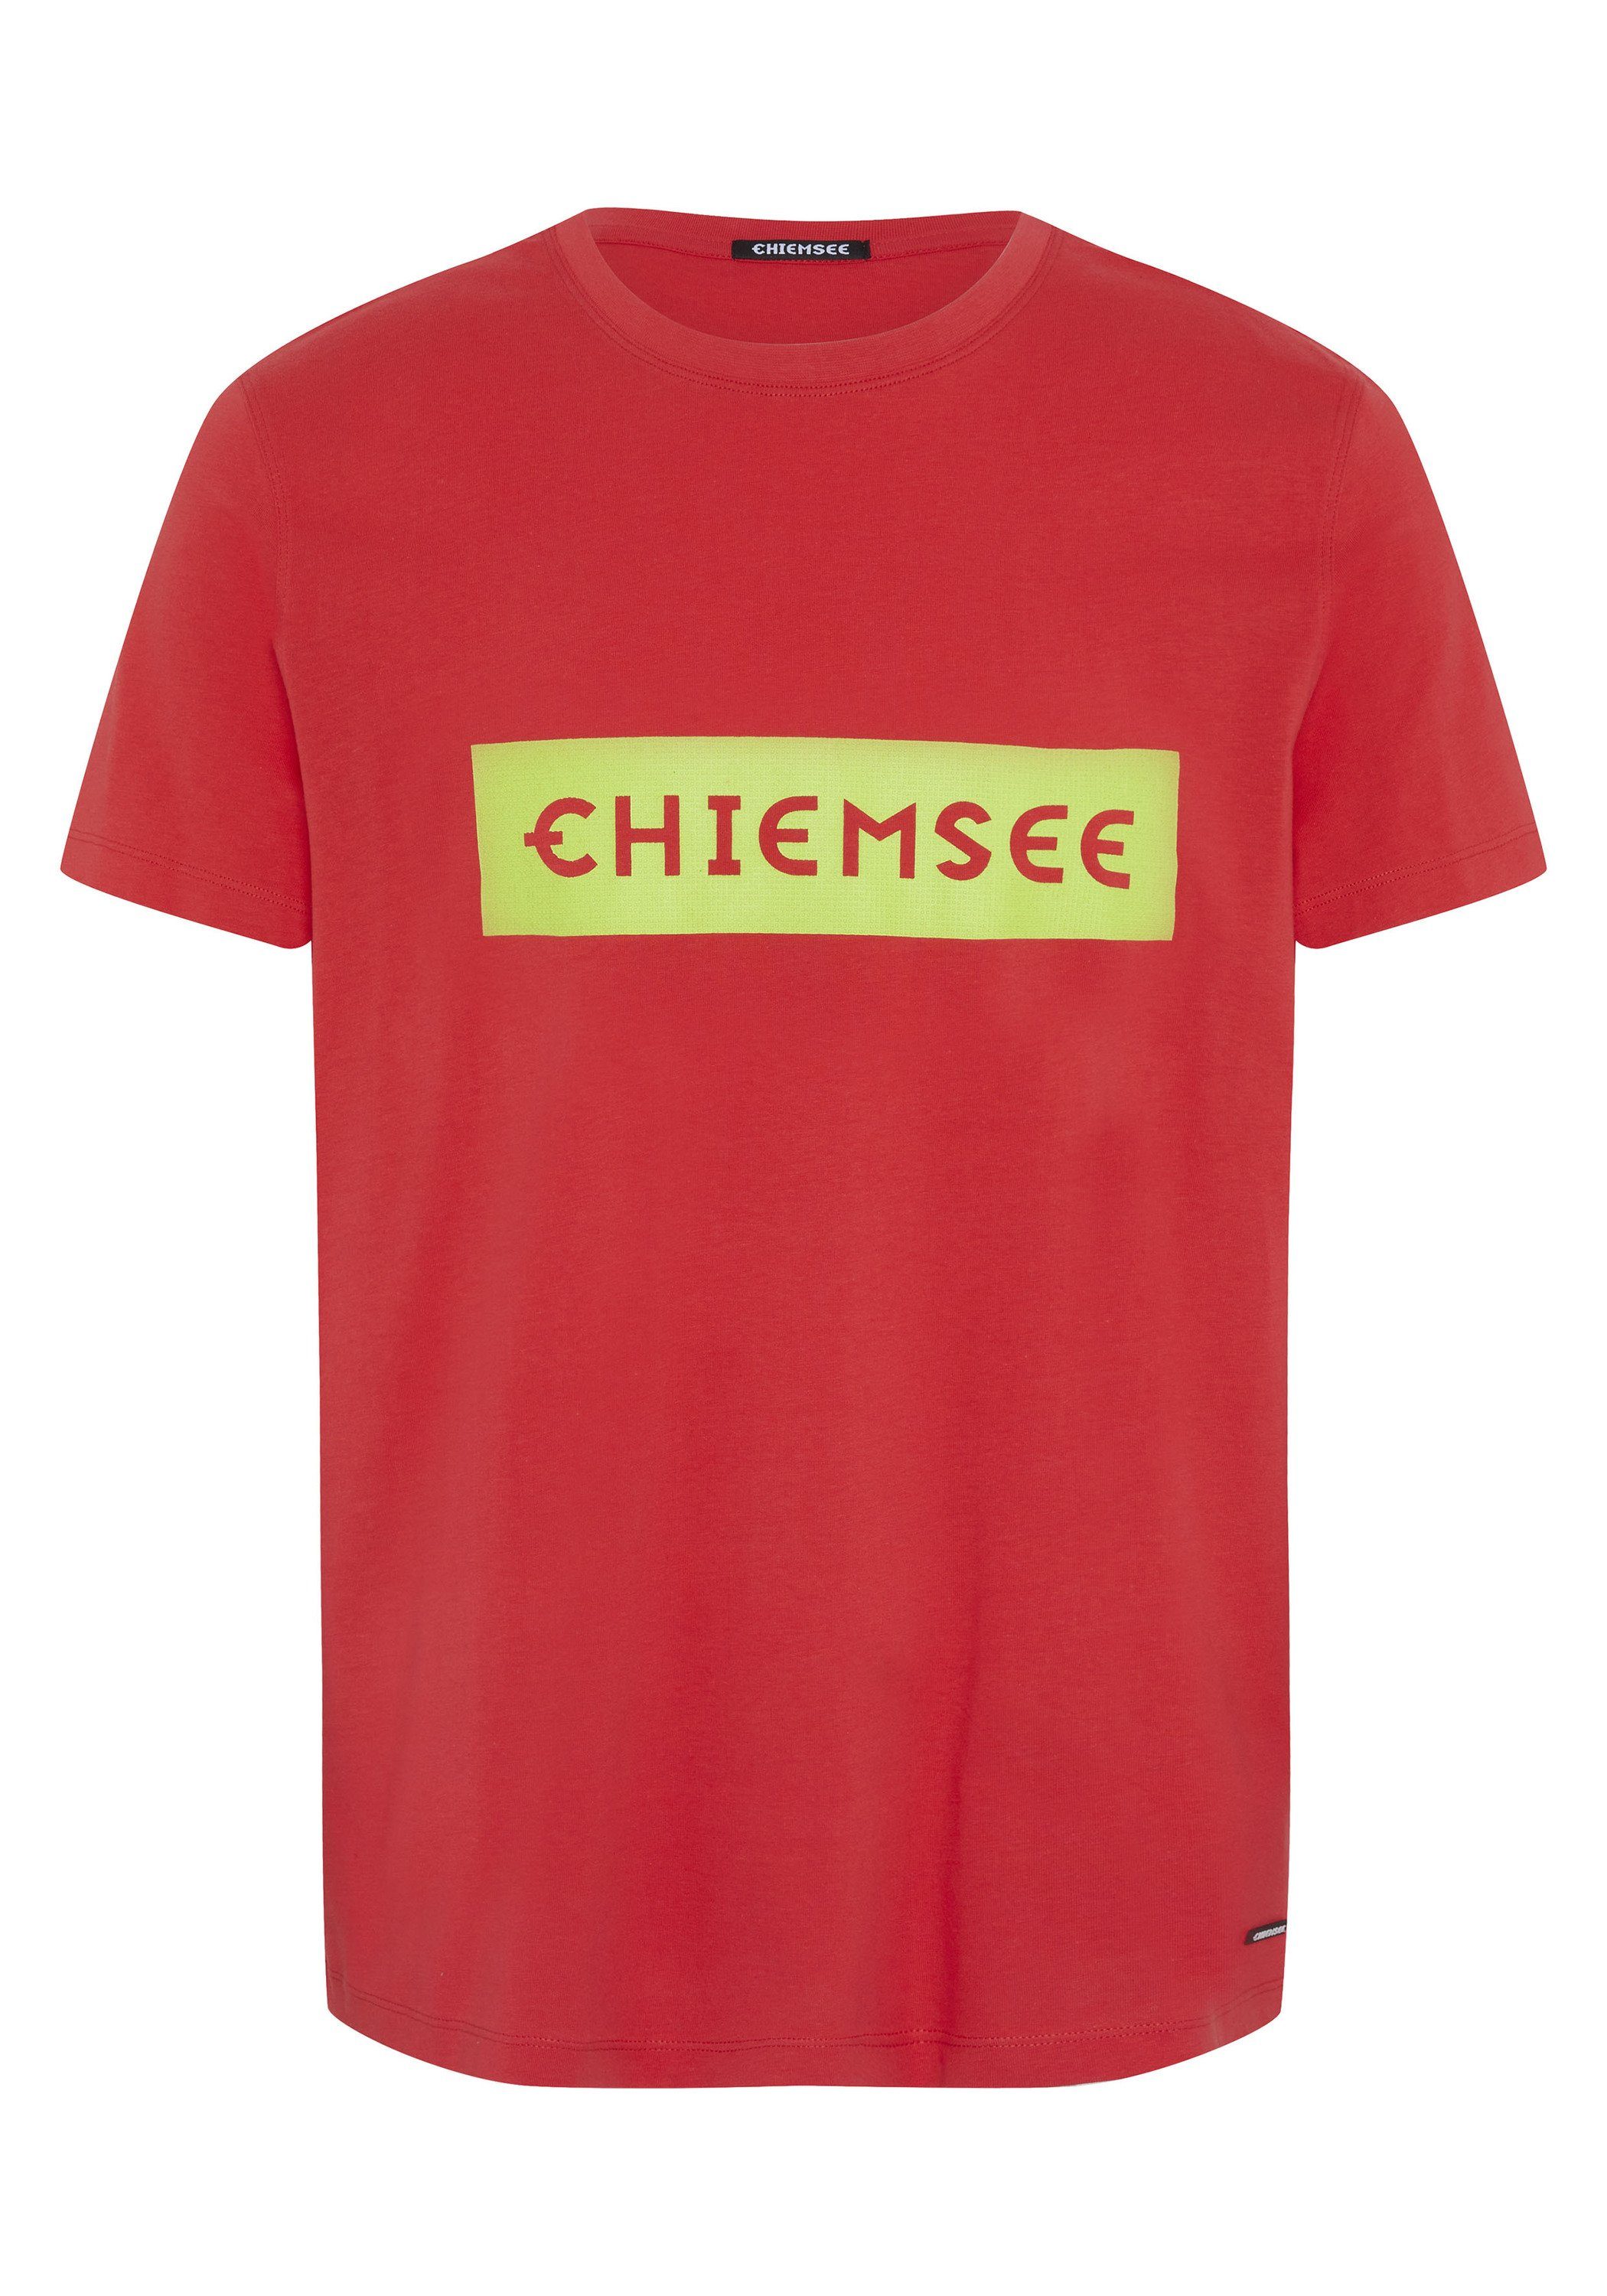 Chiemsee Print-Shirt Bittersweet Markenschriftzug mit 1 17-1663 T-Shirt plakativem